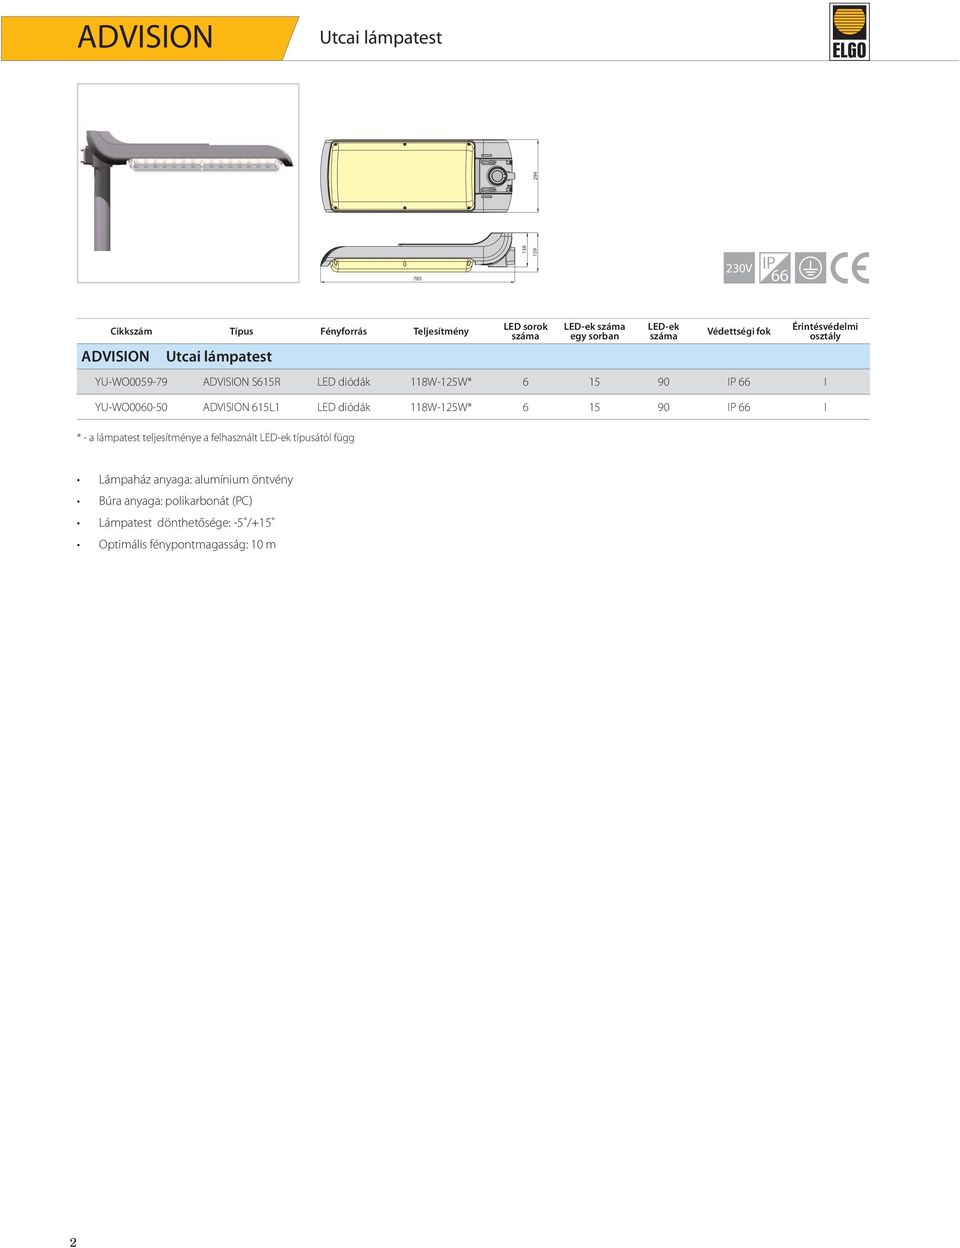 YU-WO0060-50 ADVISION 615L1 LED diódák 118W-125W* 6 15 90 IP 66 I * - a lámpatest a felhasznált LED-ek típusától függ